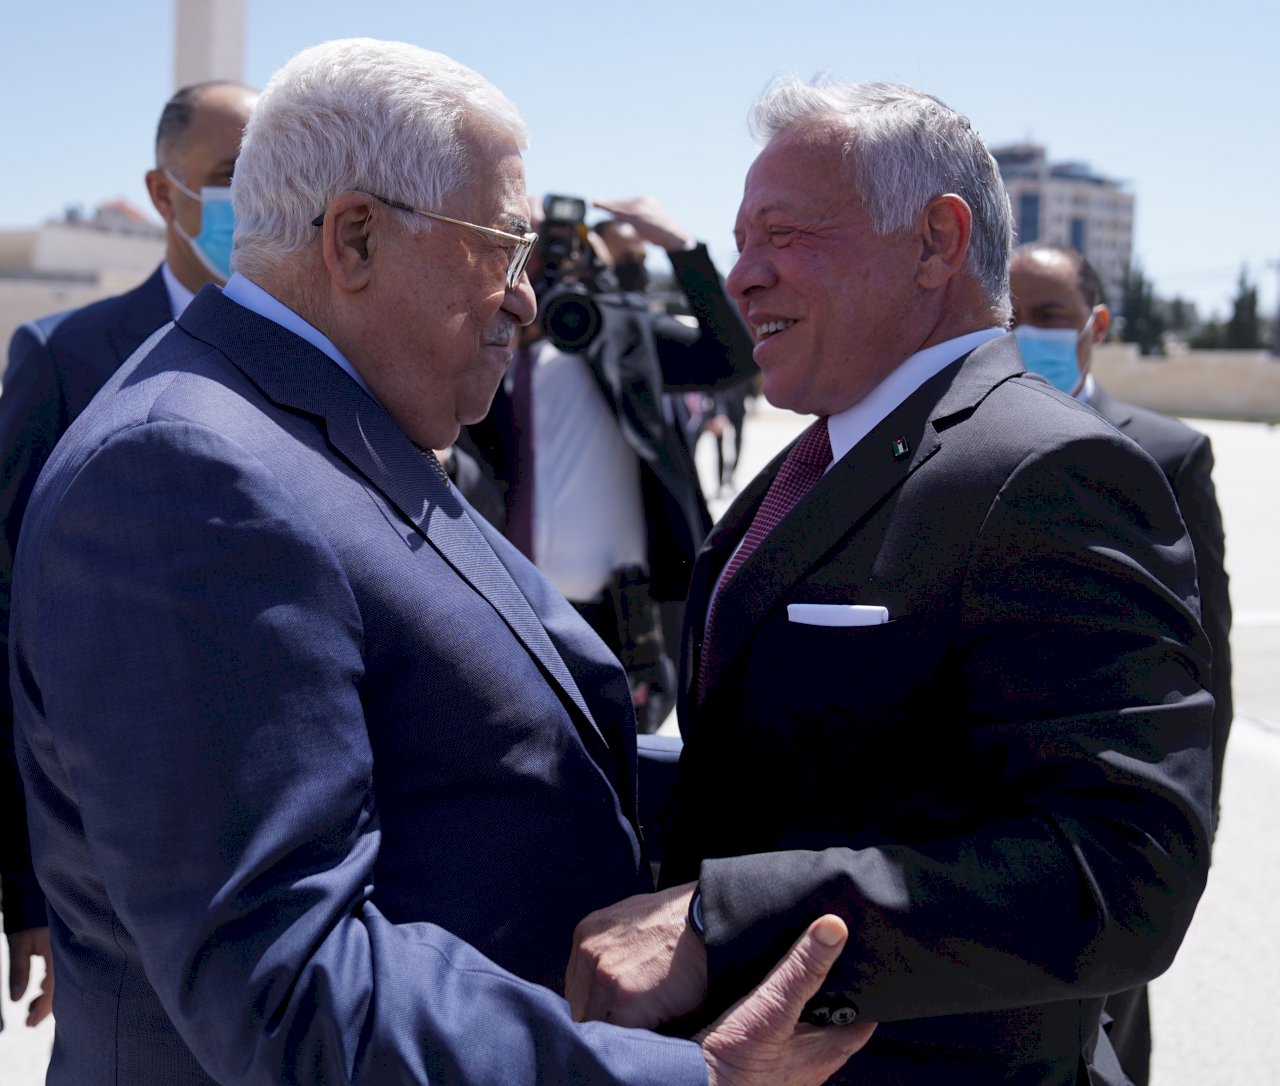 約旦國王訪約旦河西岸 會晤巴勒斯坦領袖阿巴斯